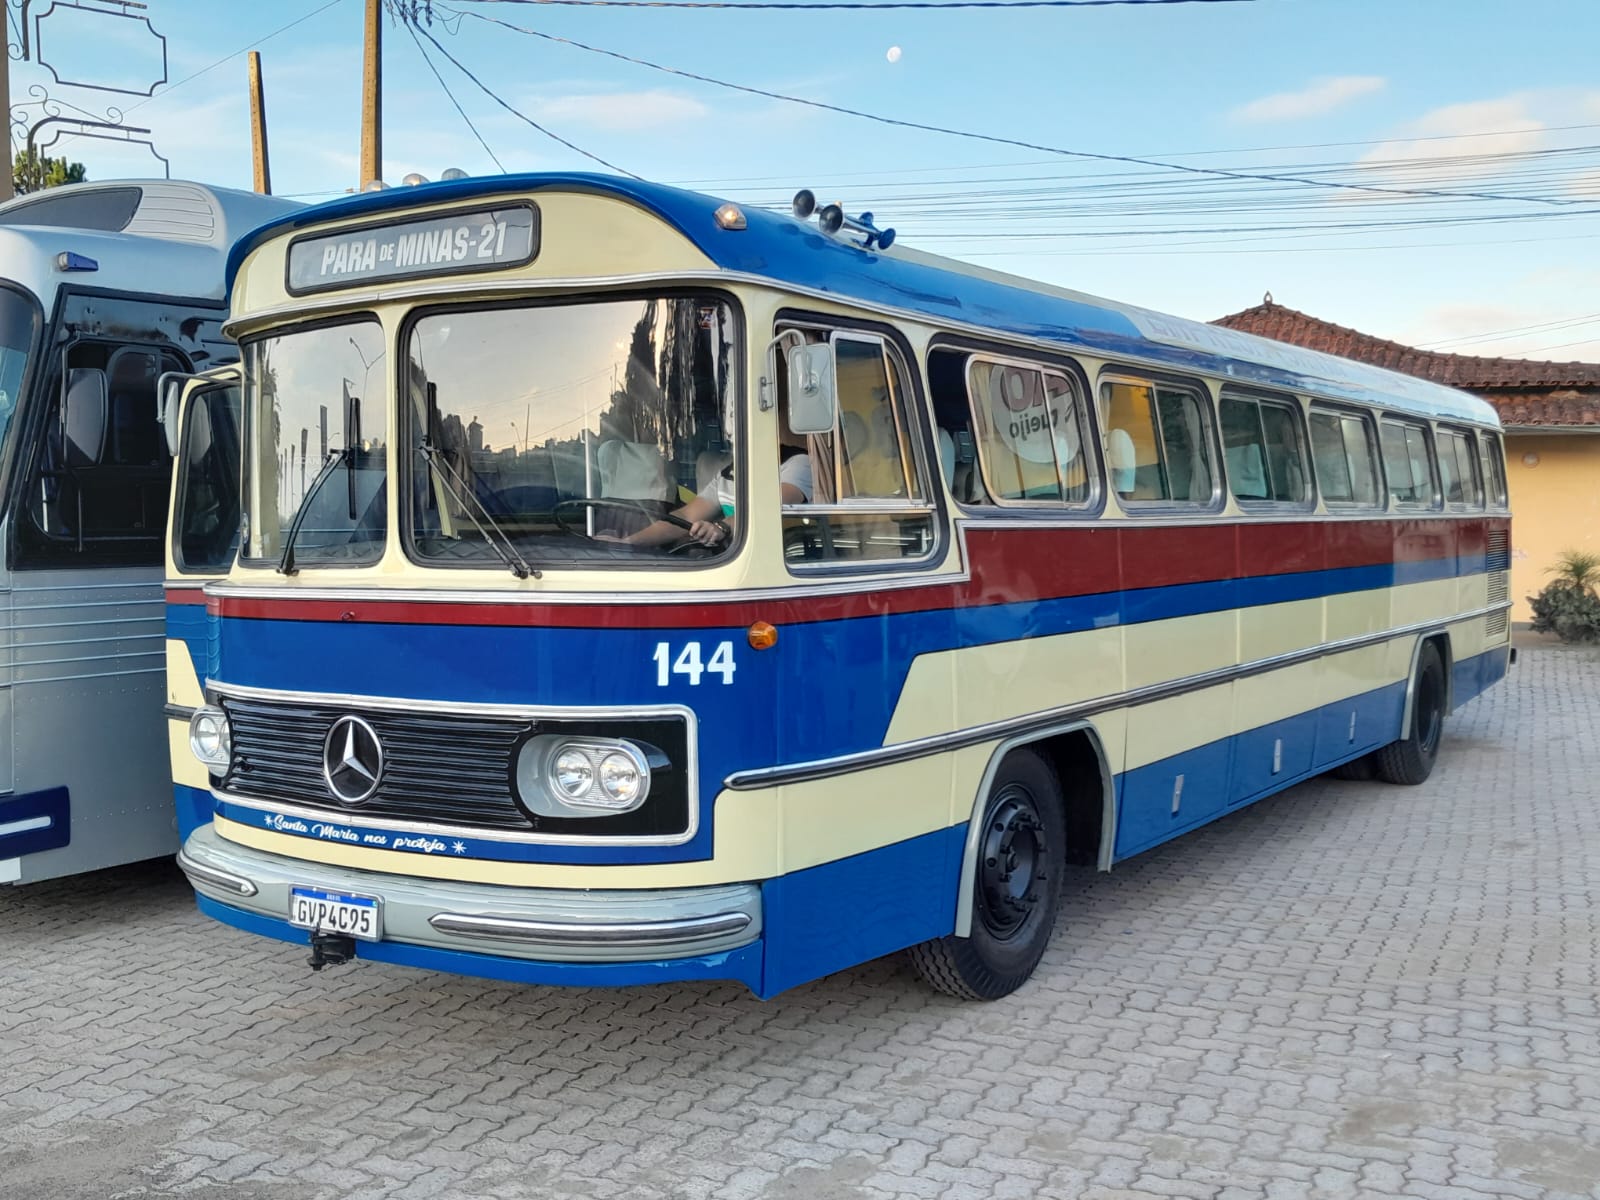 Empresário restaura ônibus monobloco ano 1977 nas cores da empresa Santa Maria, de Pará de Minas